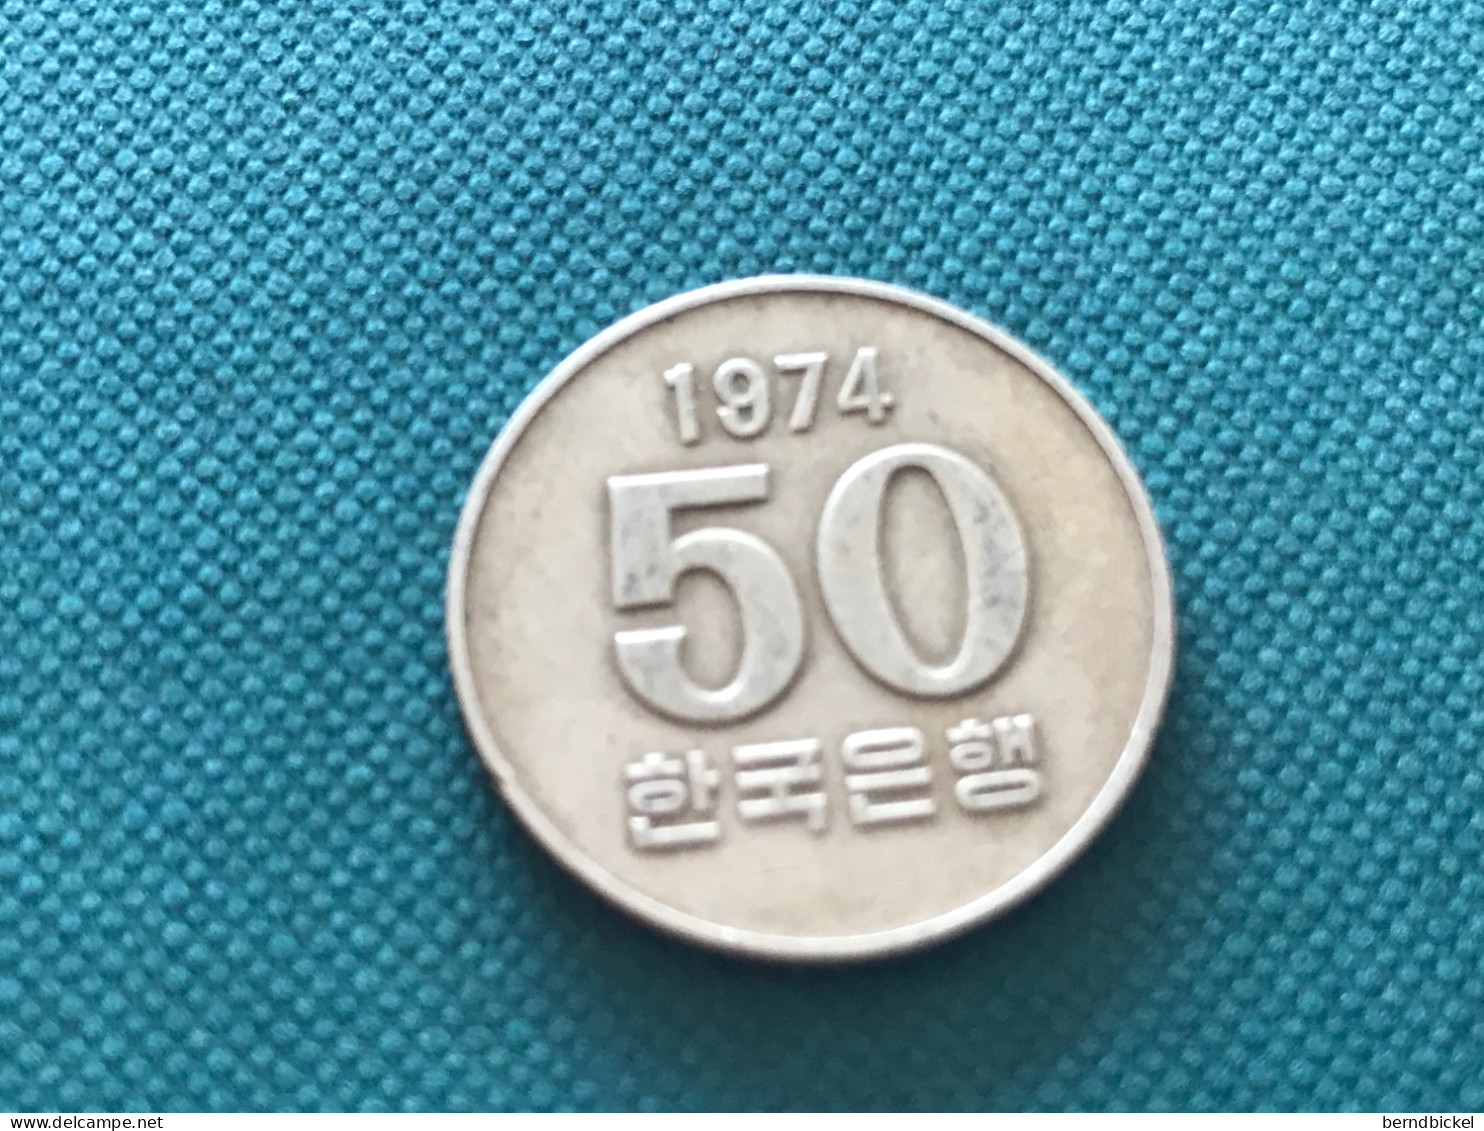 Münzen Münze Umlaufmünze Süd-Korea 50 Won 1974 - Korea (Zuid)